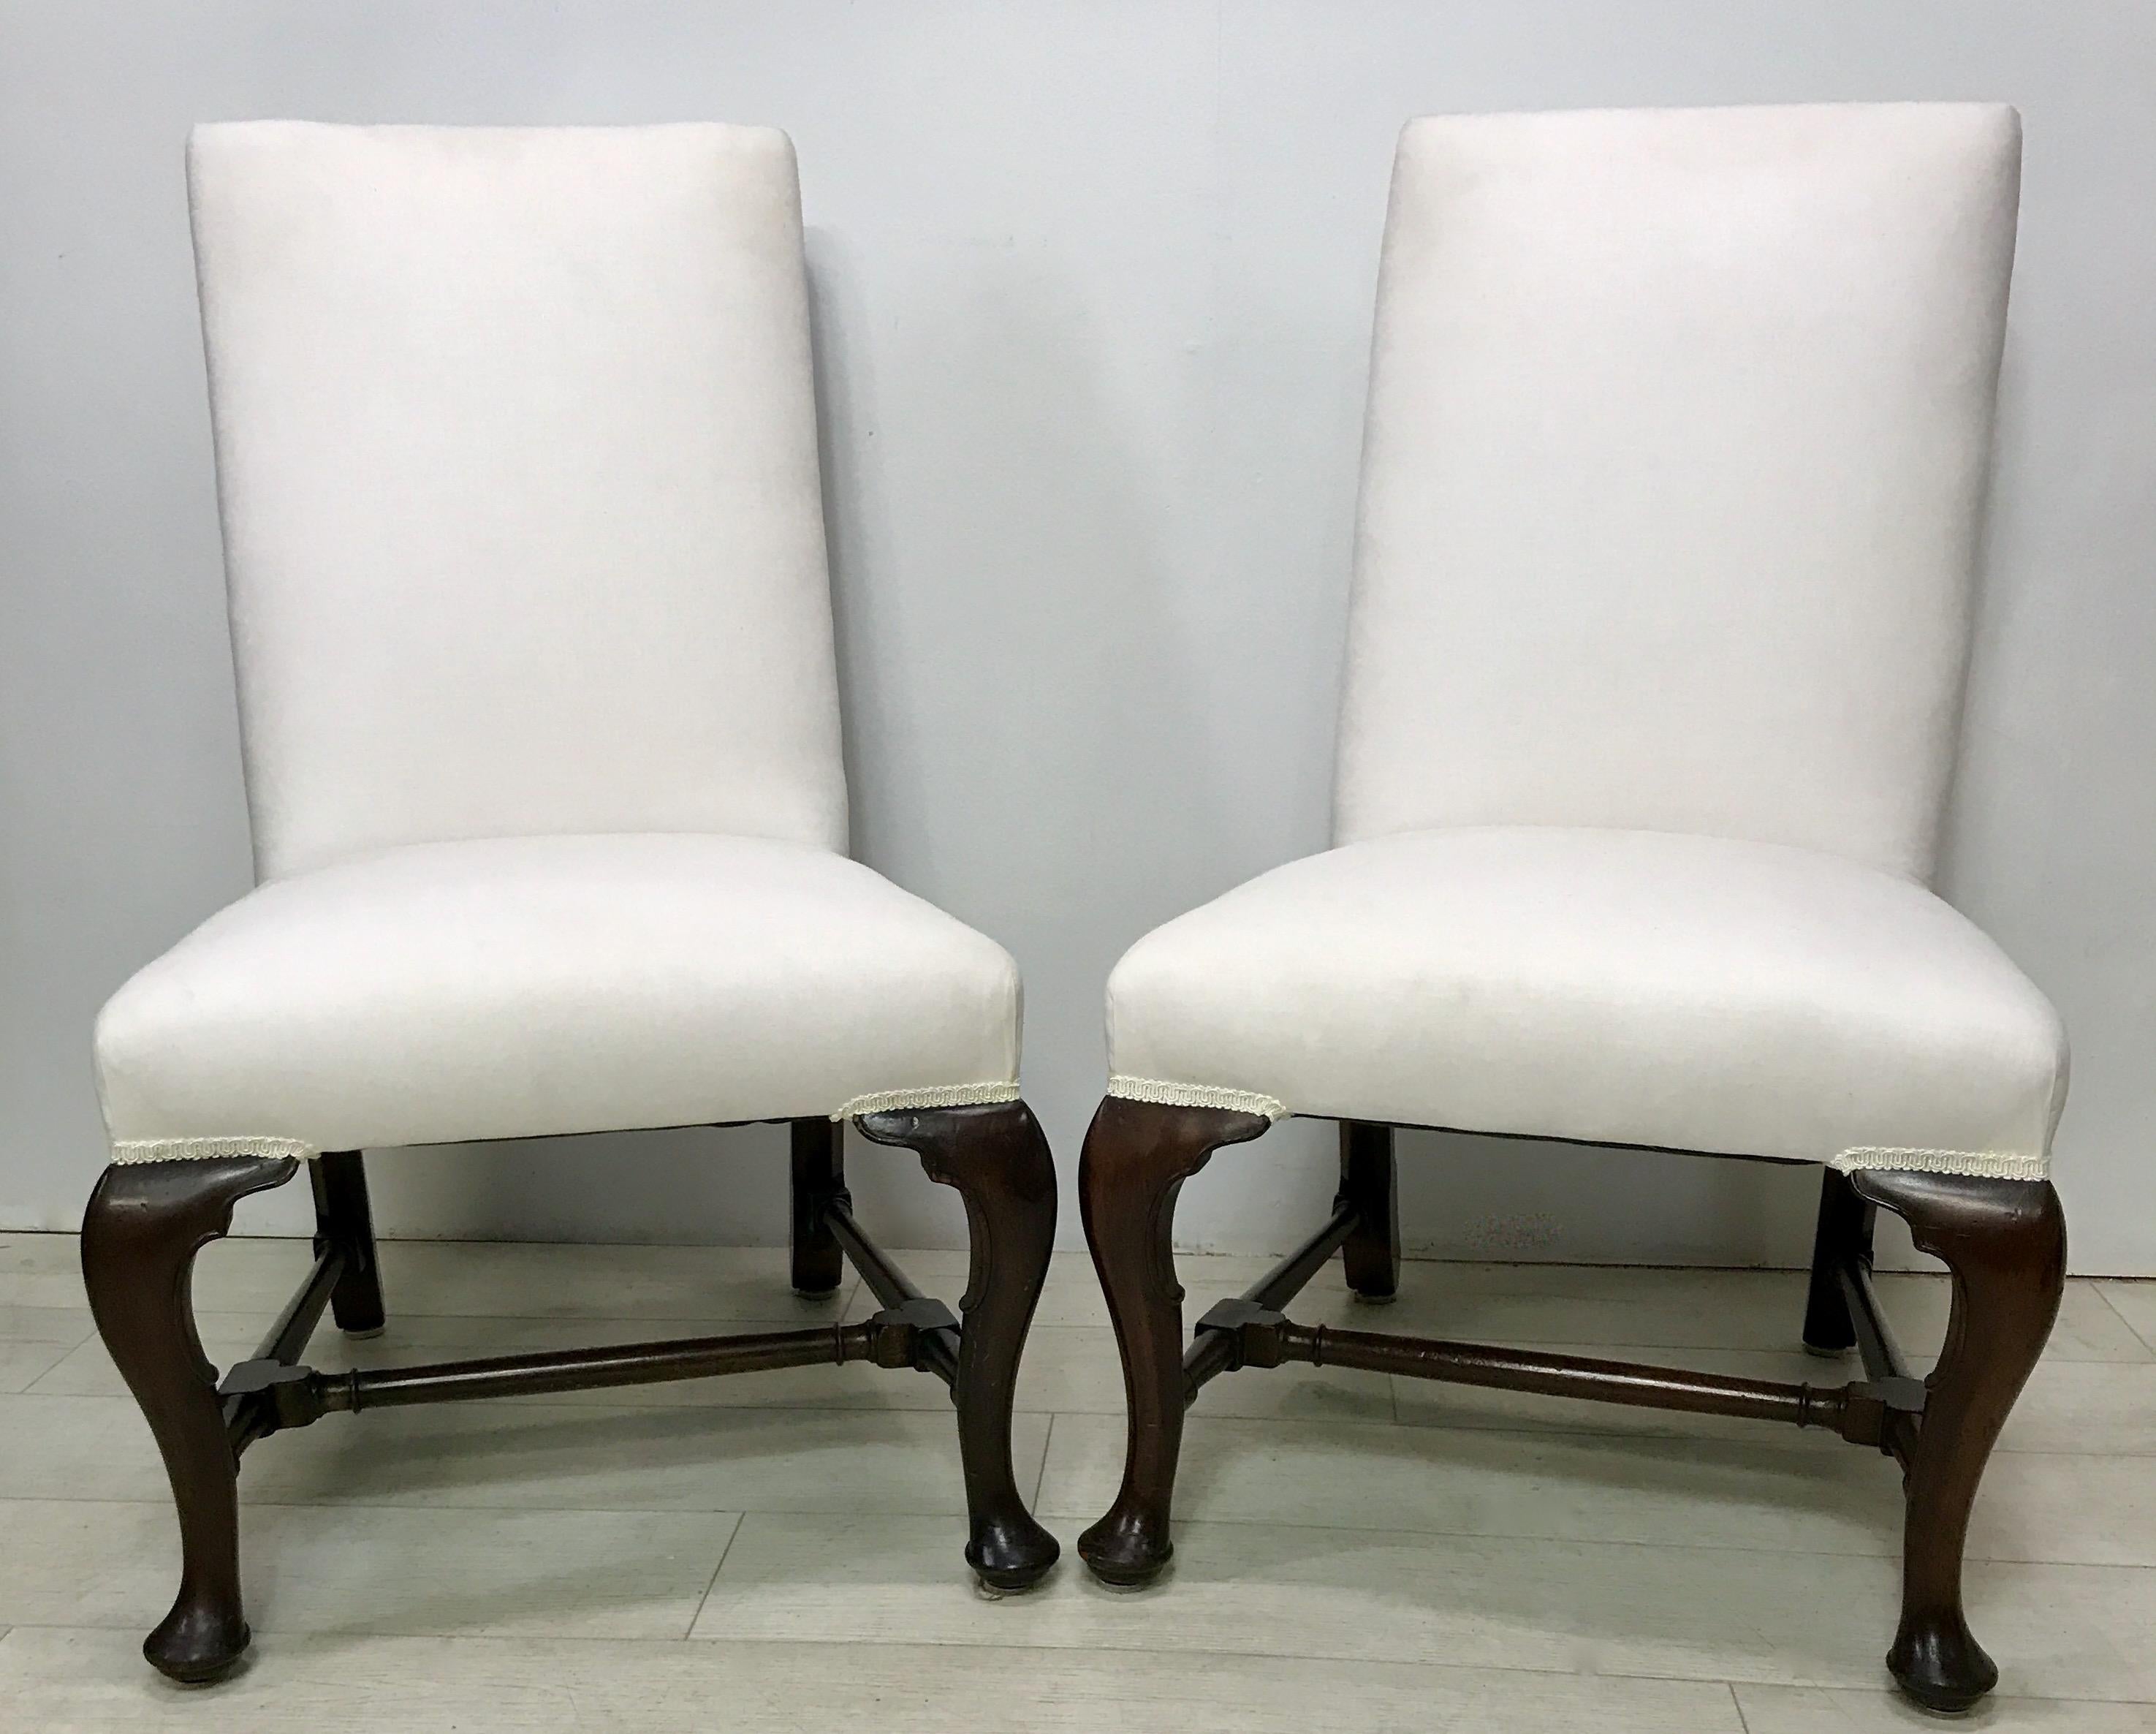 Ein Paar wunderschön handgefertigte (durch die Bank) Beistellstühle aus Mahagoni im Queen-Anne-Stil, bereit zum Aufpolstern.
Diese Stühle sind in ausgezeichnetem Zustand, stabil und solide.
Hergestellt im frühen 20. Jahrhundert